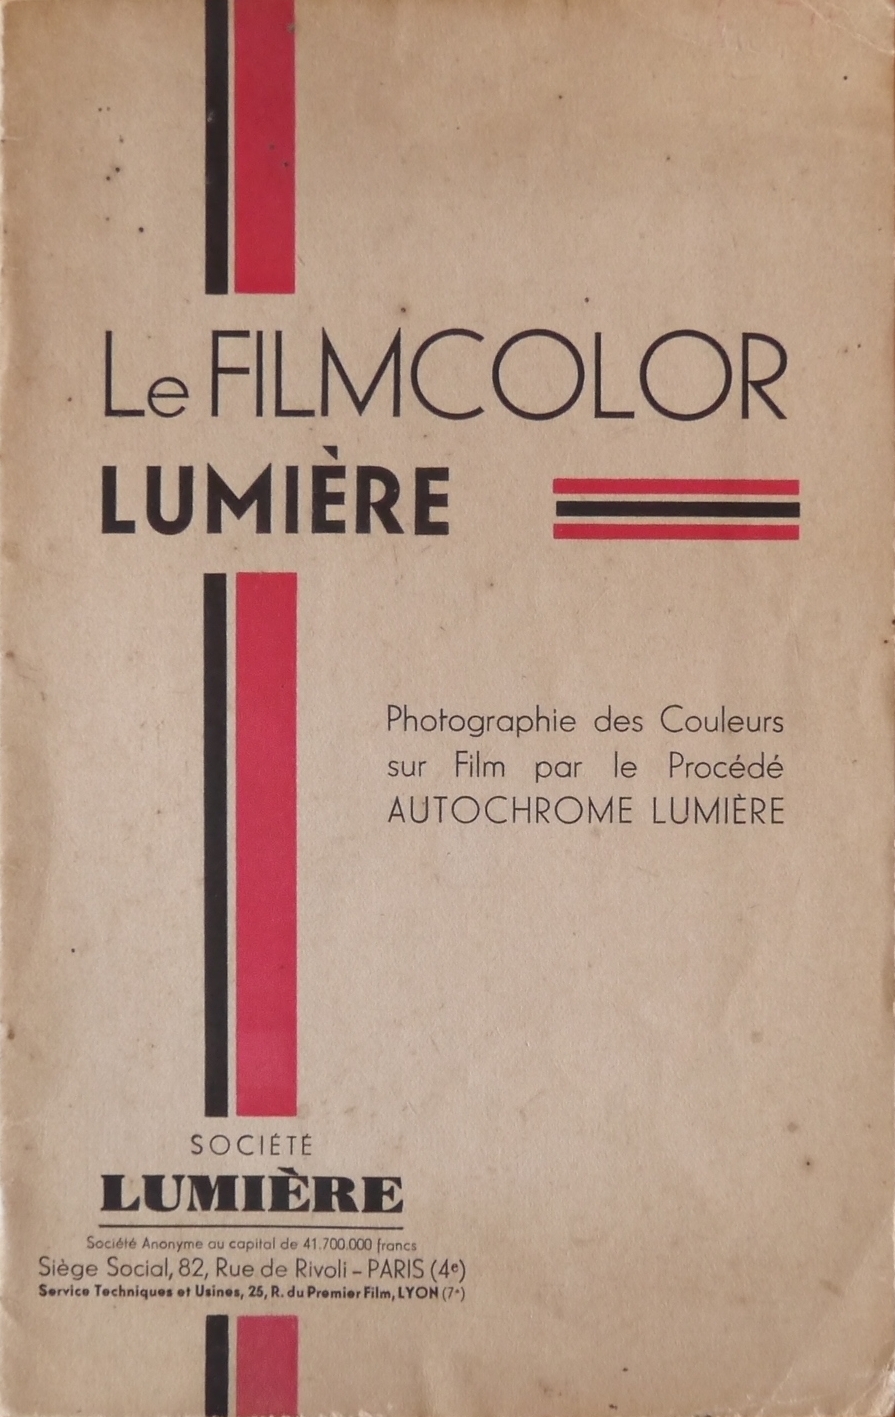 1932 - Sté Lumière - Notice Filmcolor